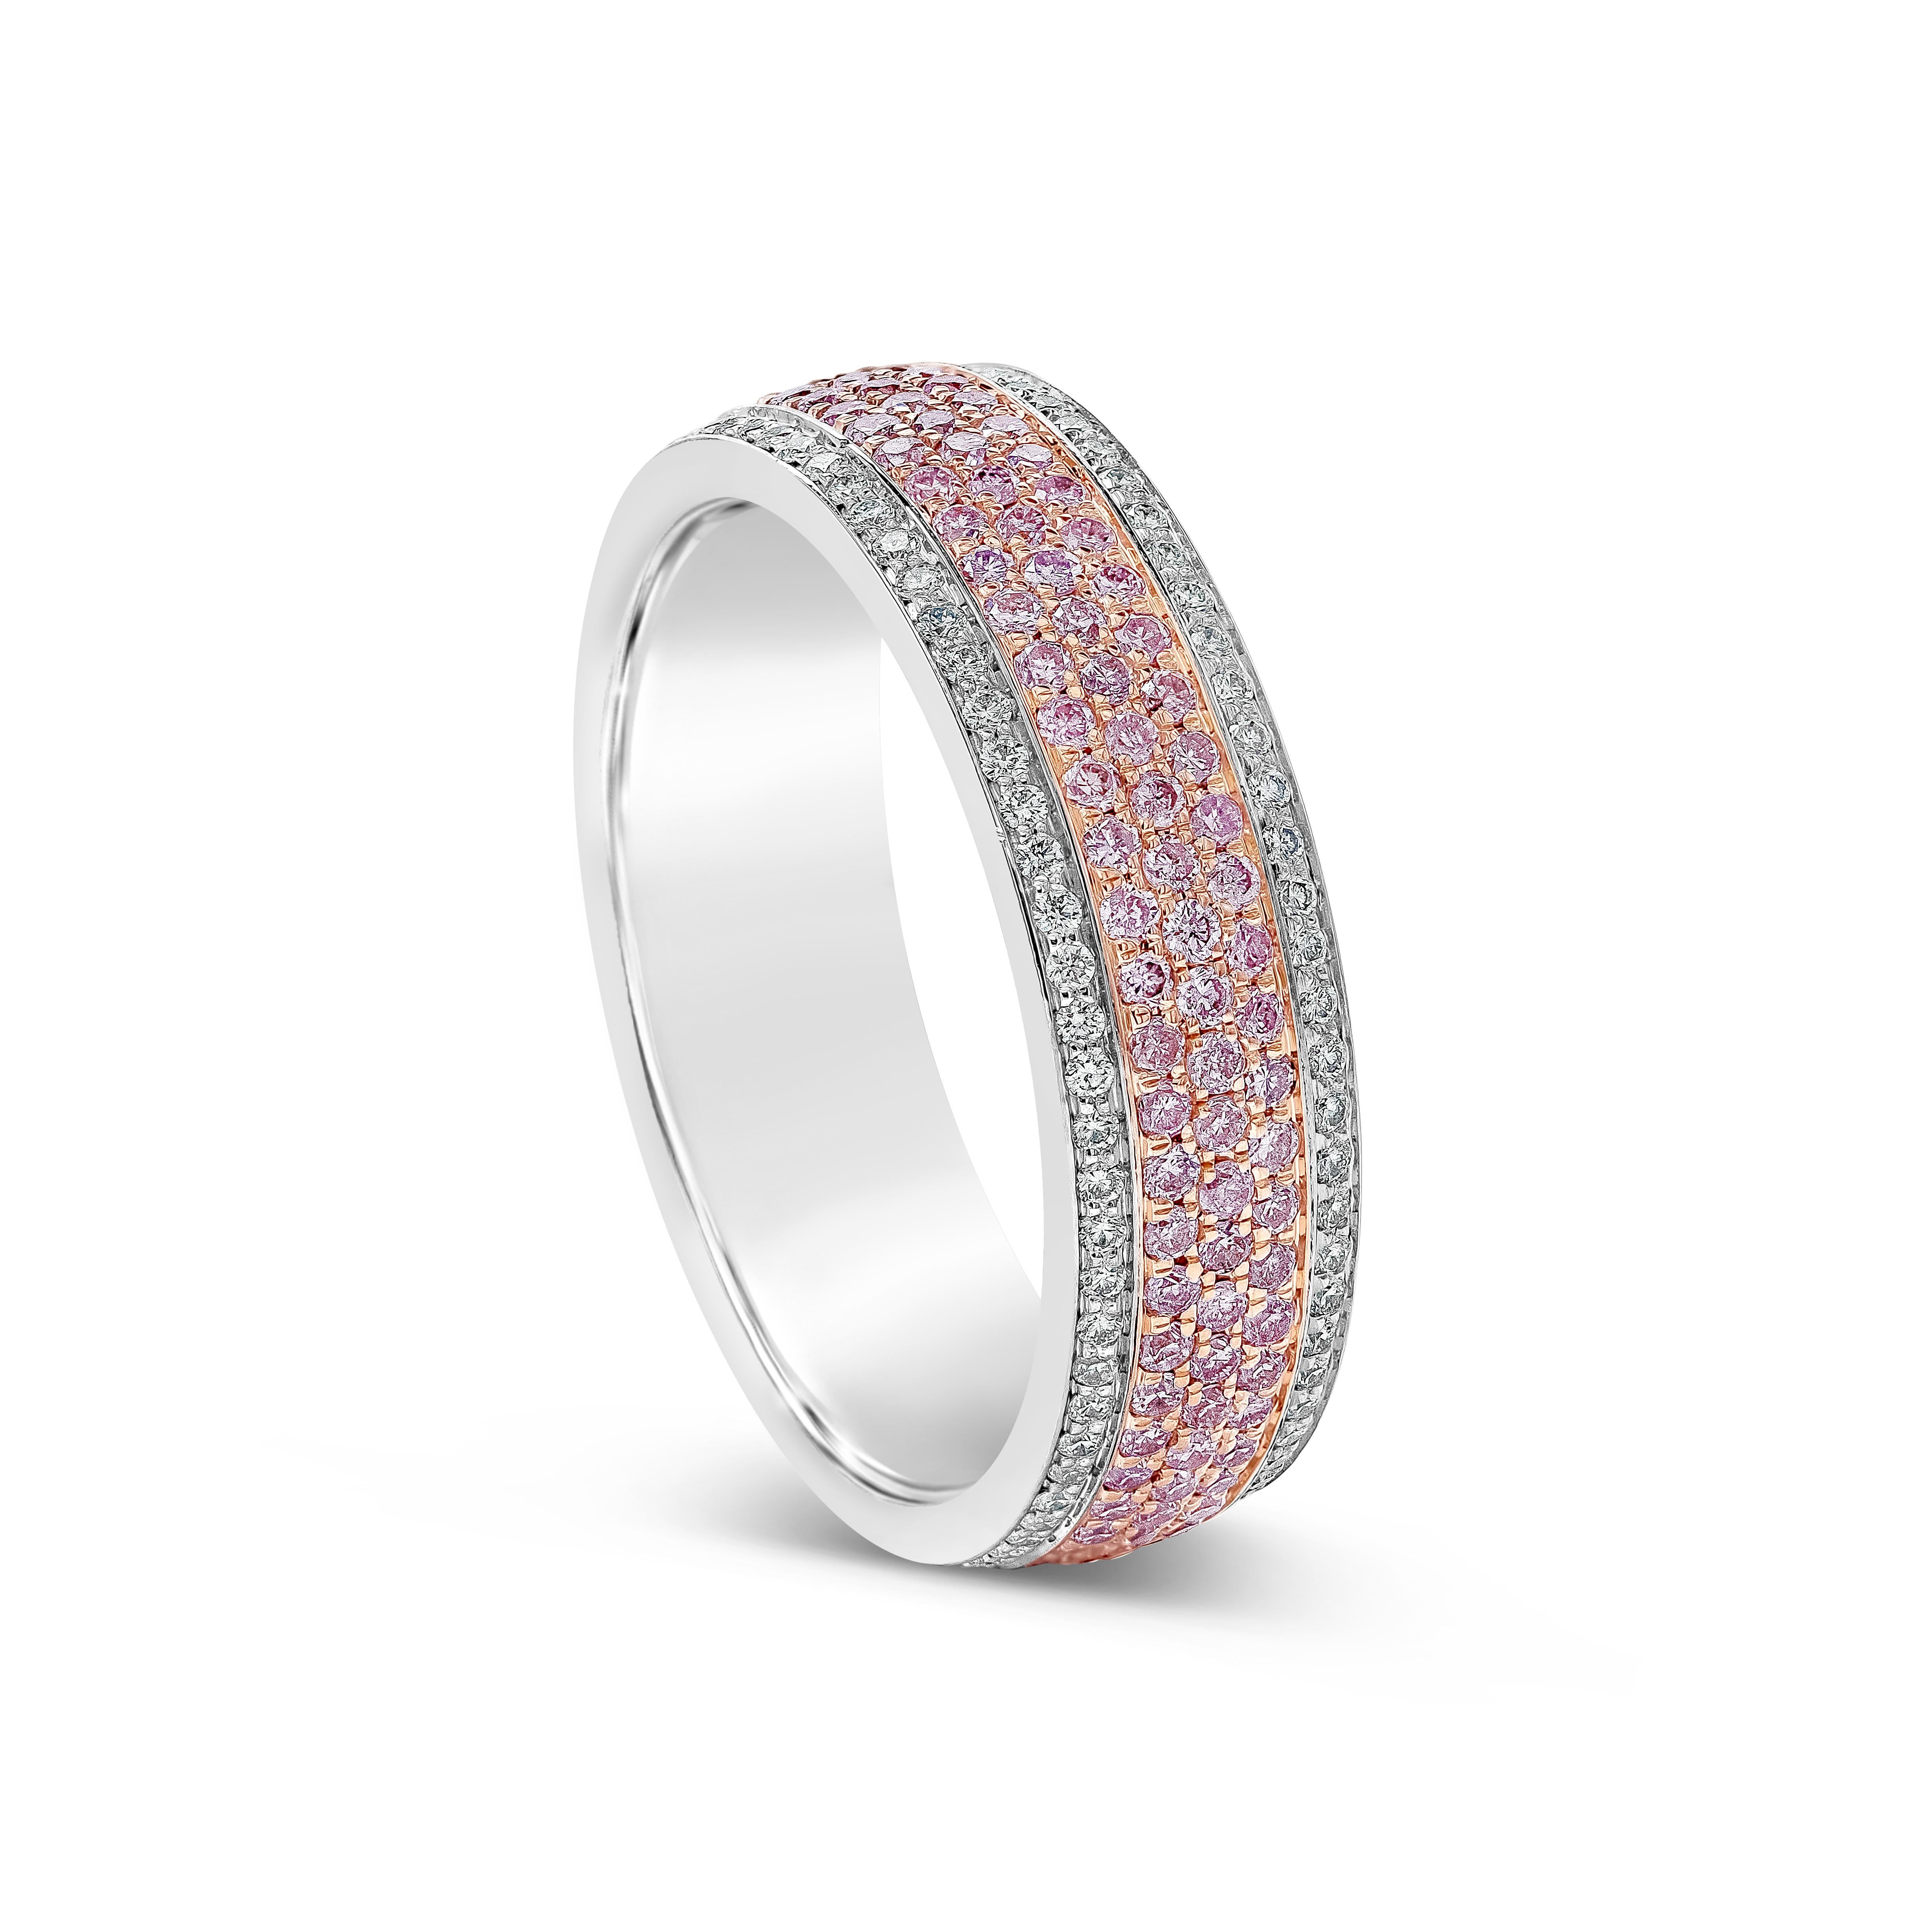 Ein wunderschöner und schicker Ehering mit drei Reihen leuchtend rosafarbener Diamanten, mikrogefasst in weißen Brillanten. Hergestellt aus 14 Karat Roségold und Platin. Die rosafarbenen Diamanten wiegen insgesamt 0,85 Karat; die weißen Diamanten